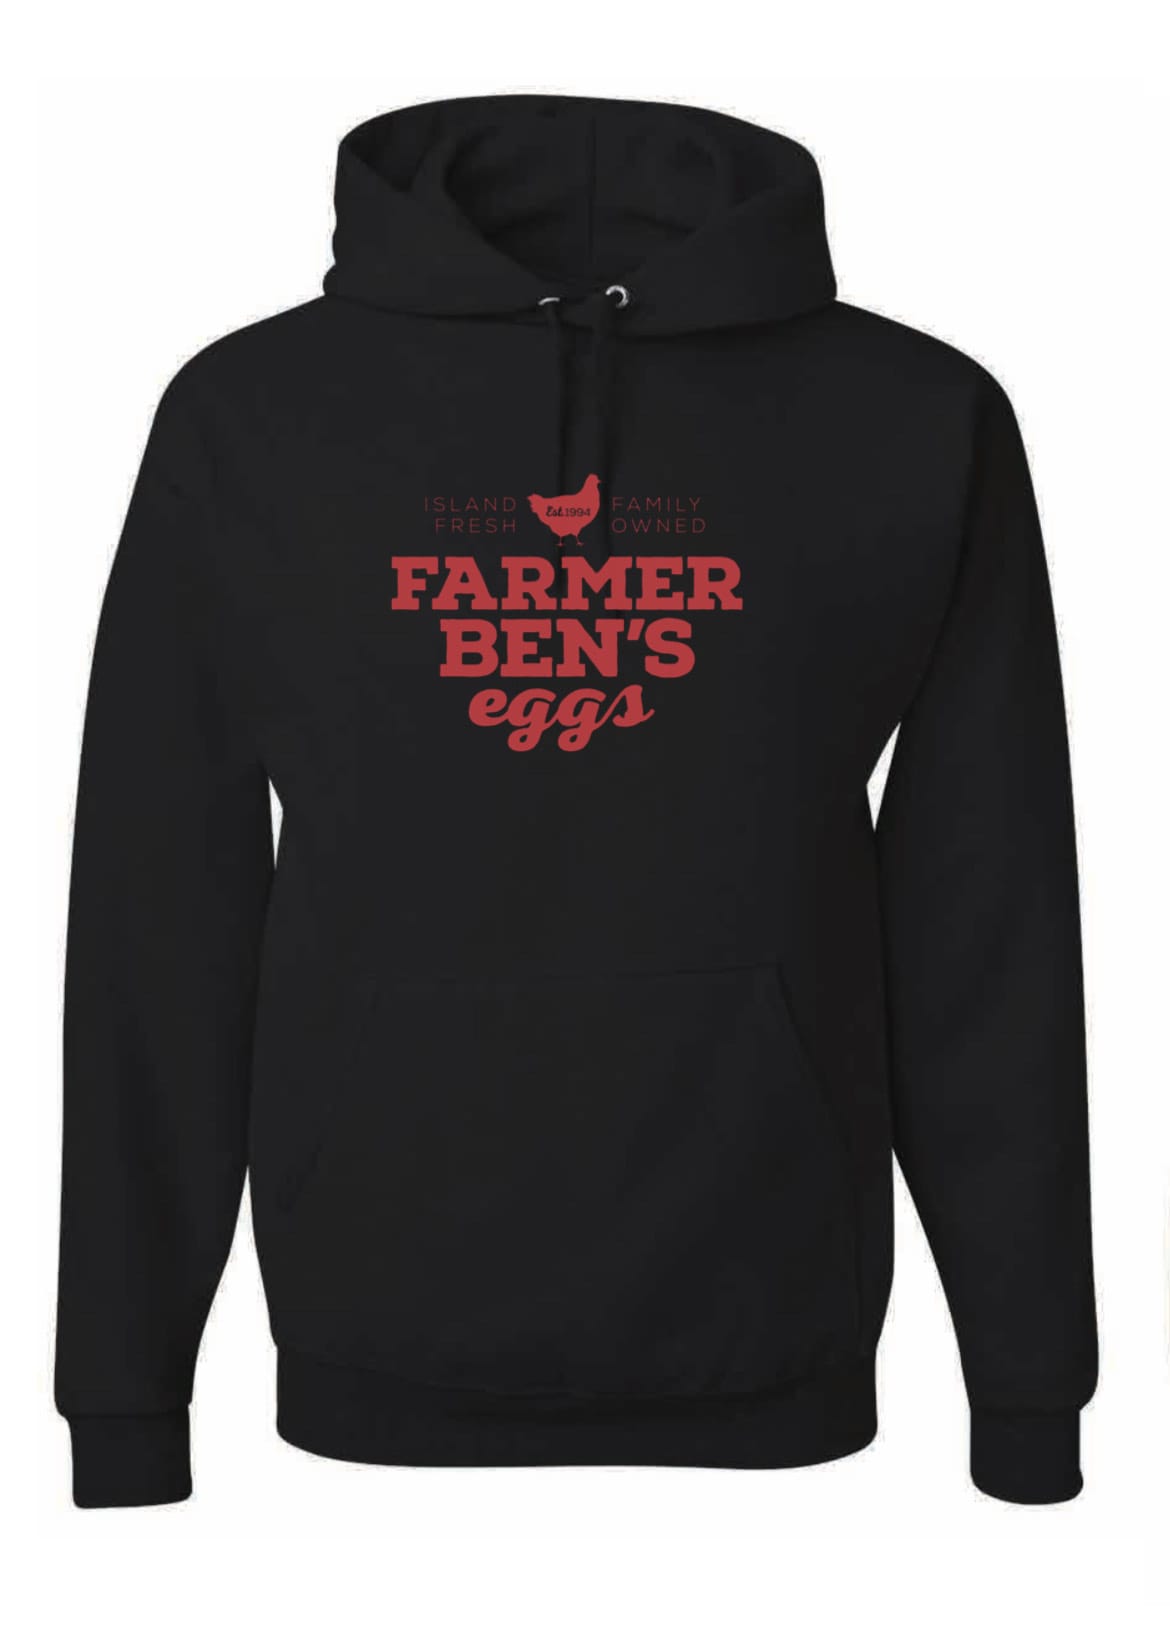 farmer bens hoodie